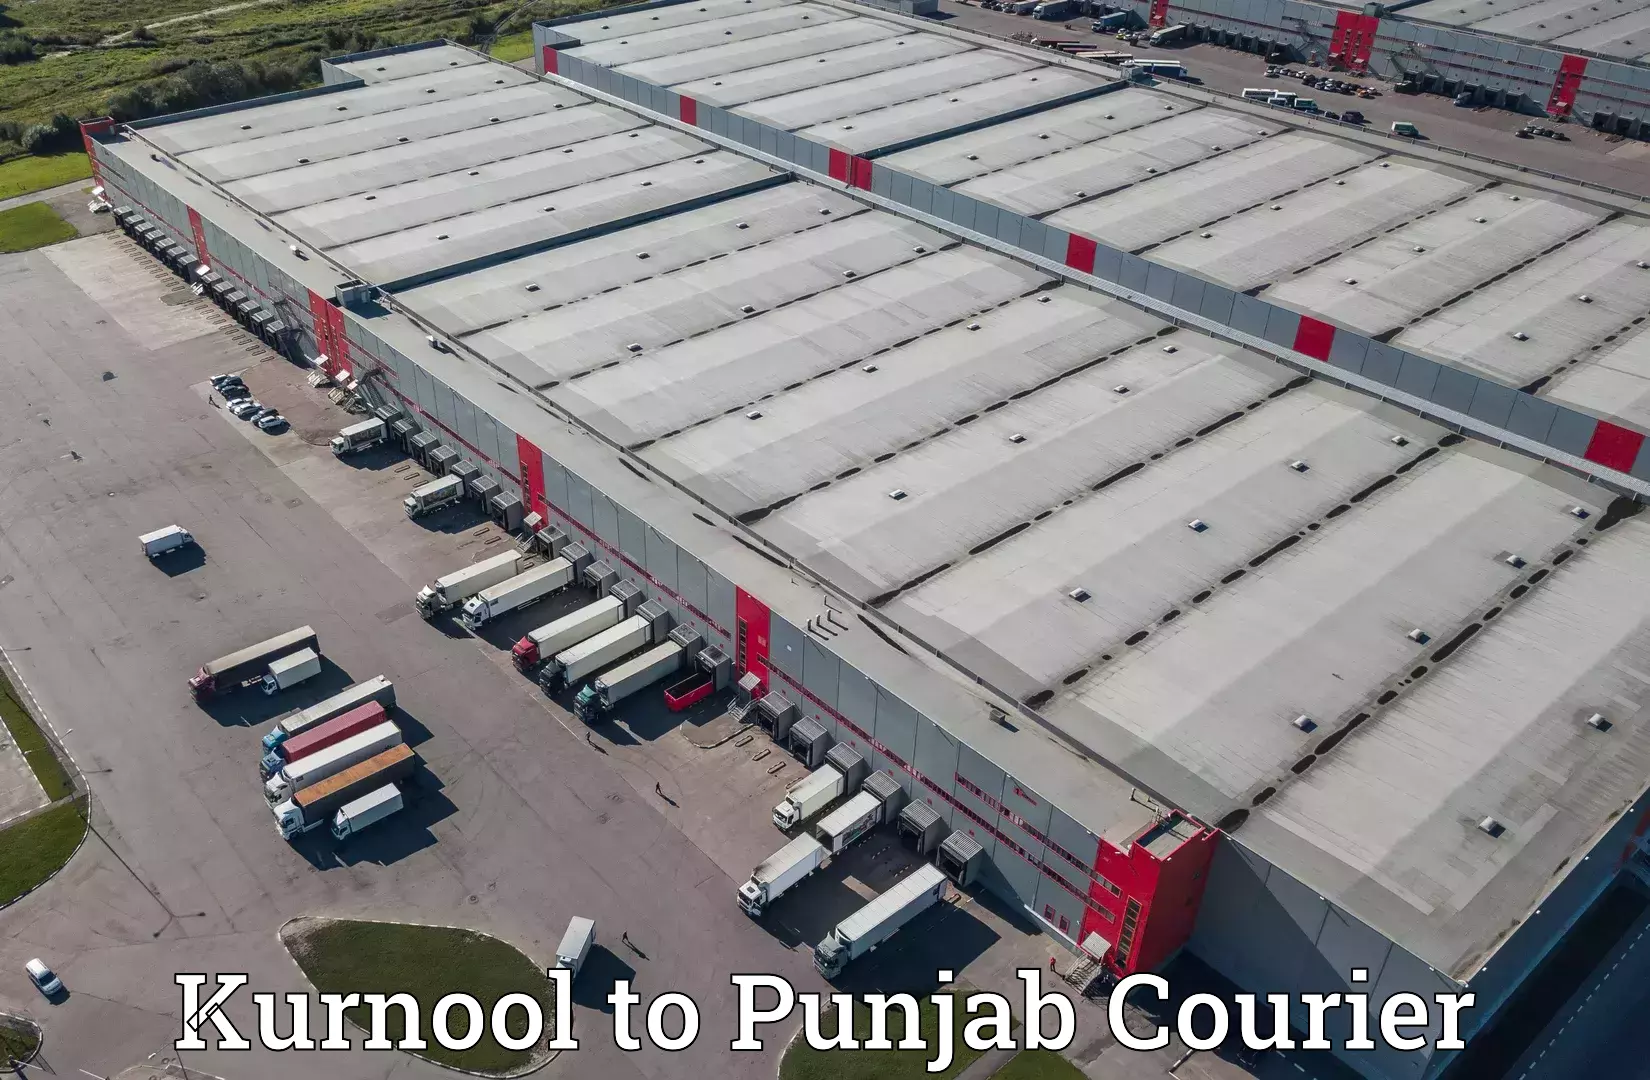 Tech-enabled shipping Kurnool to Punjab